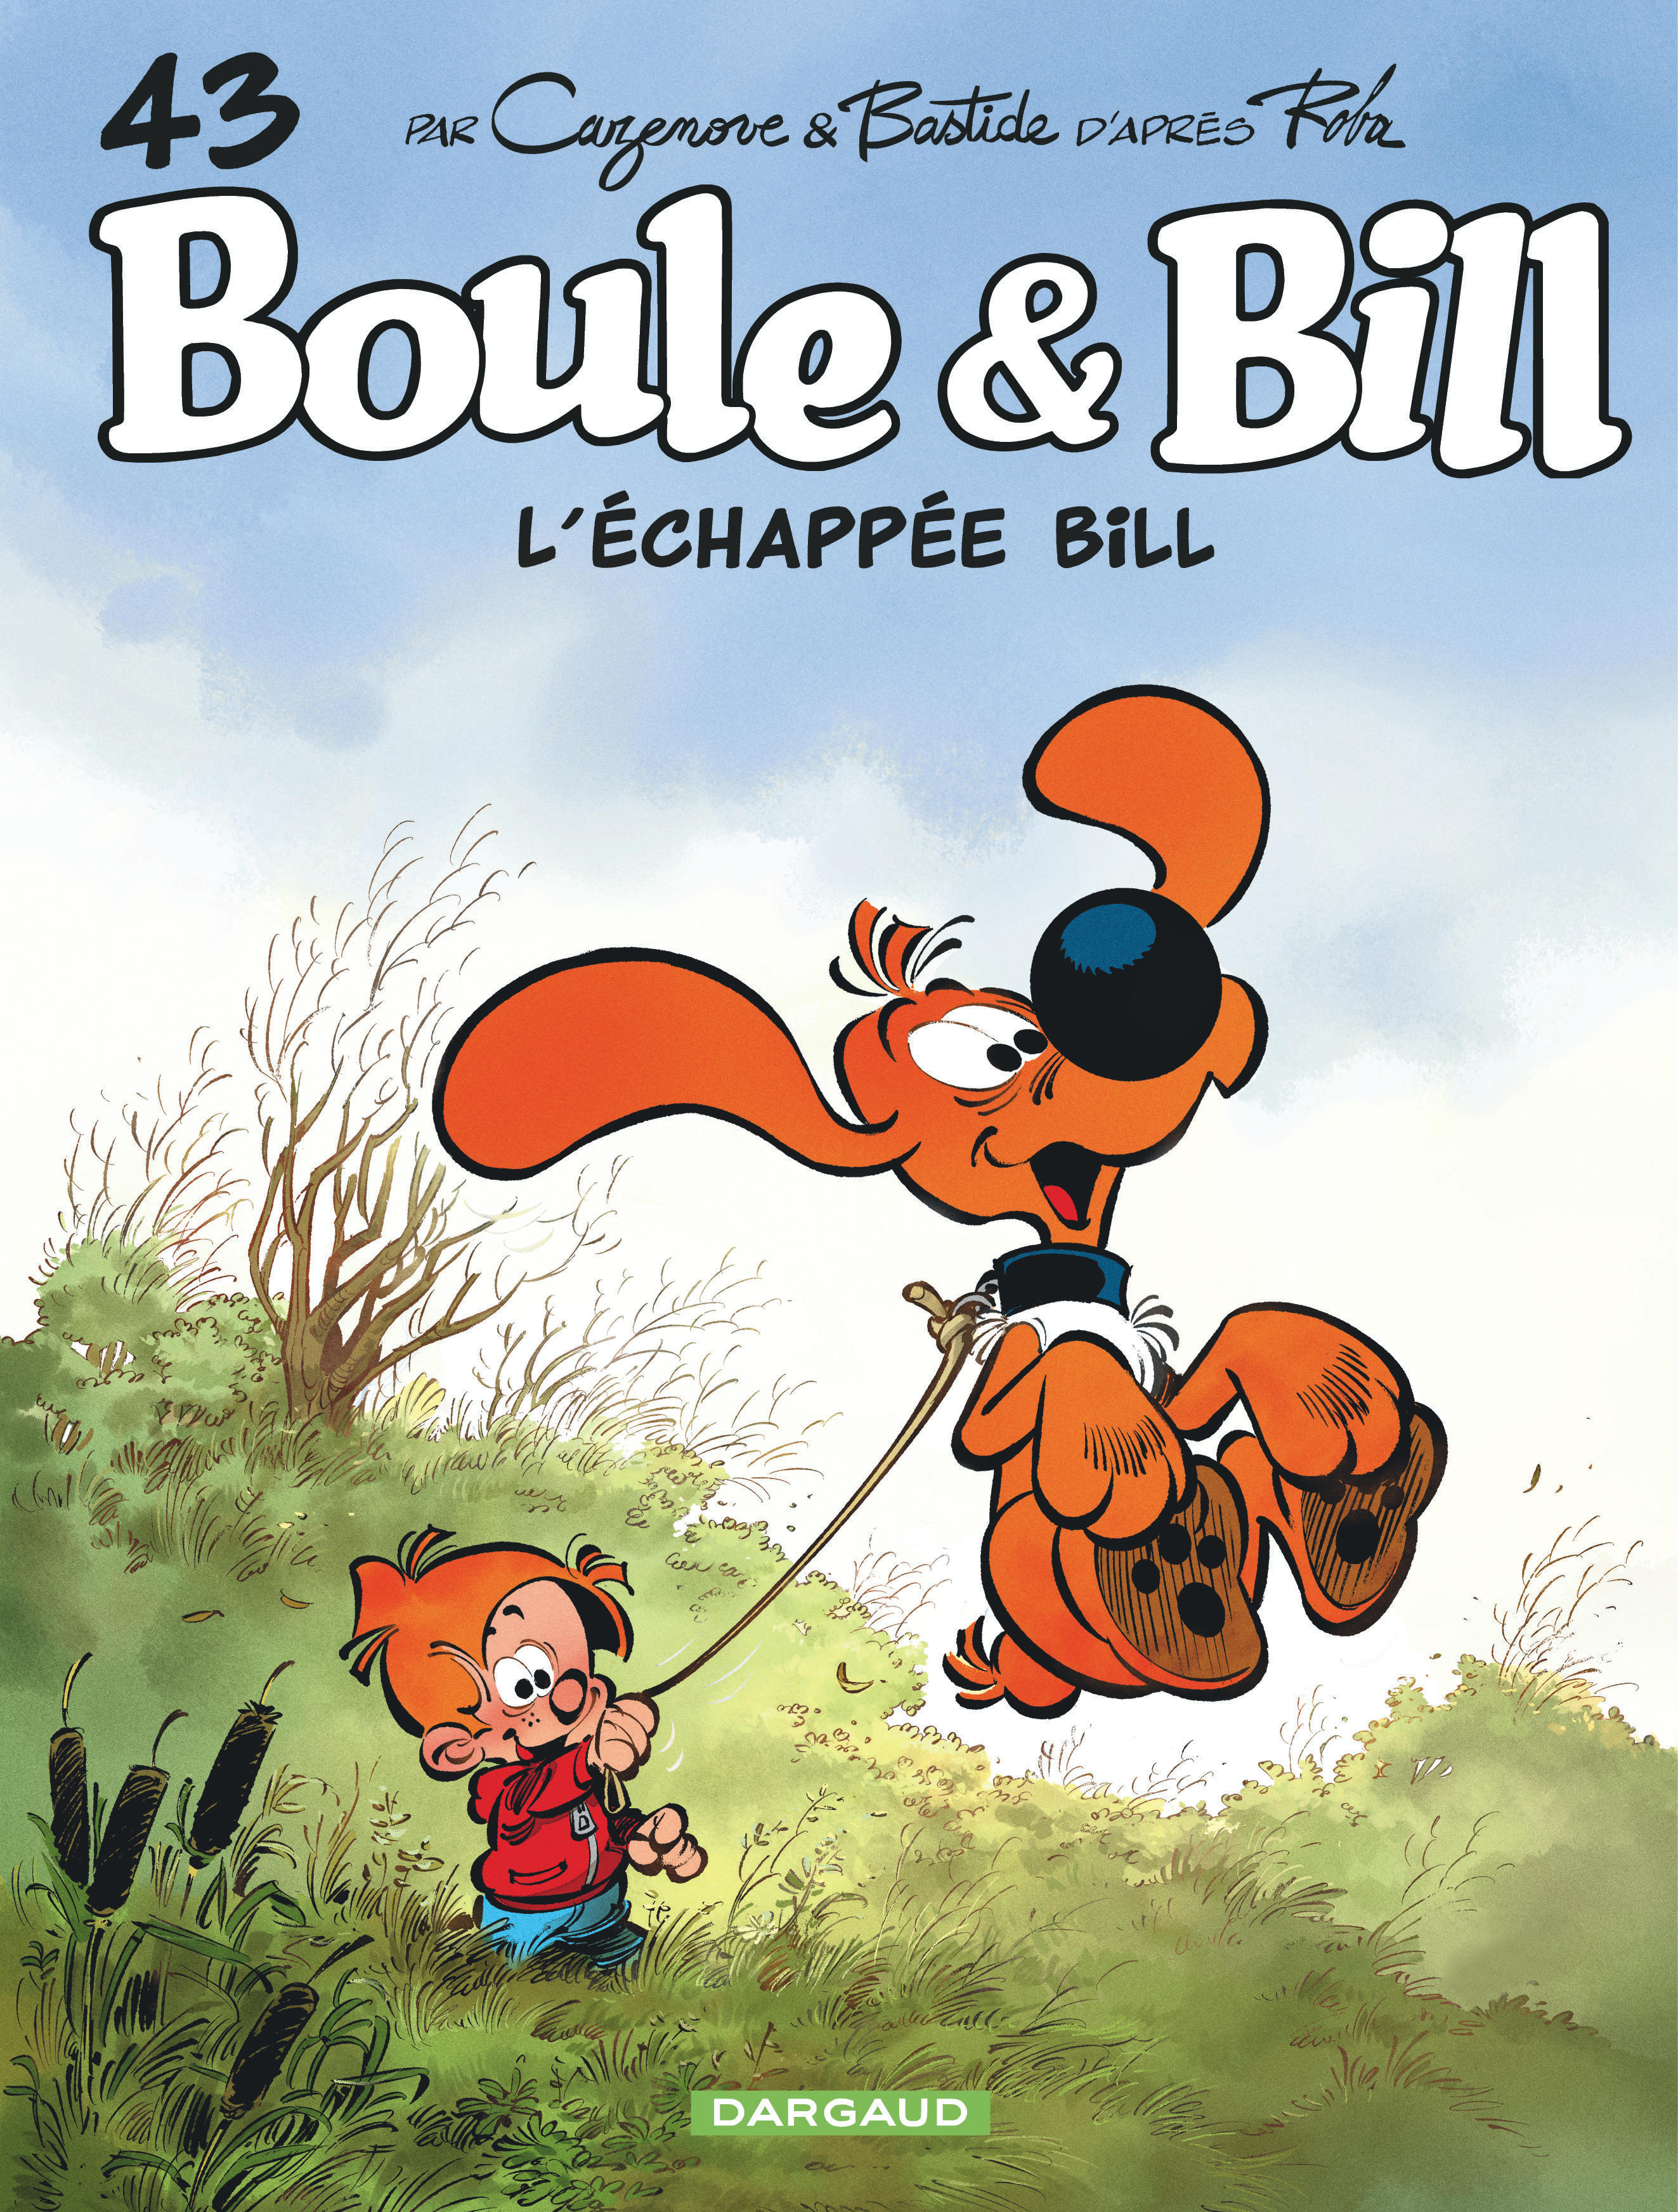 La bande dessinée « Boule & Bill » revient en Pologne !